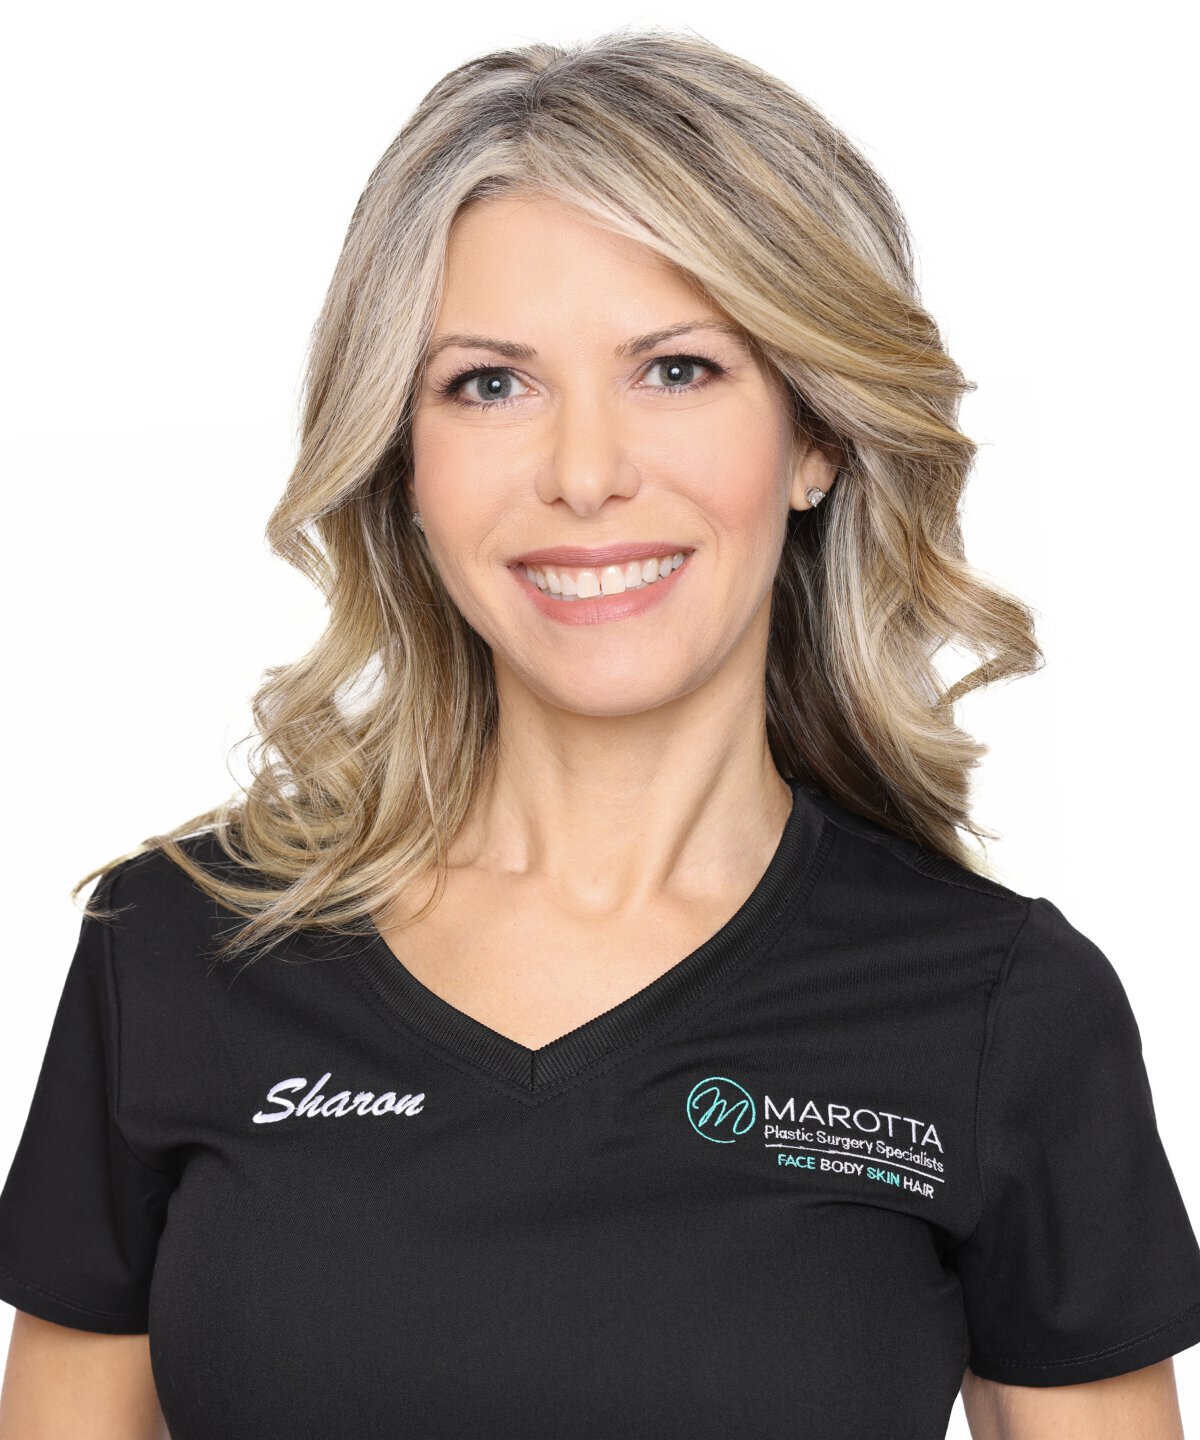 Marotta Hair Restoration staff member, Sharon Provisiero, RN